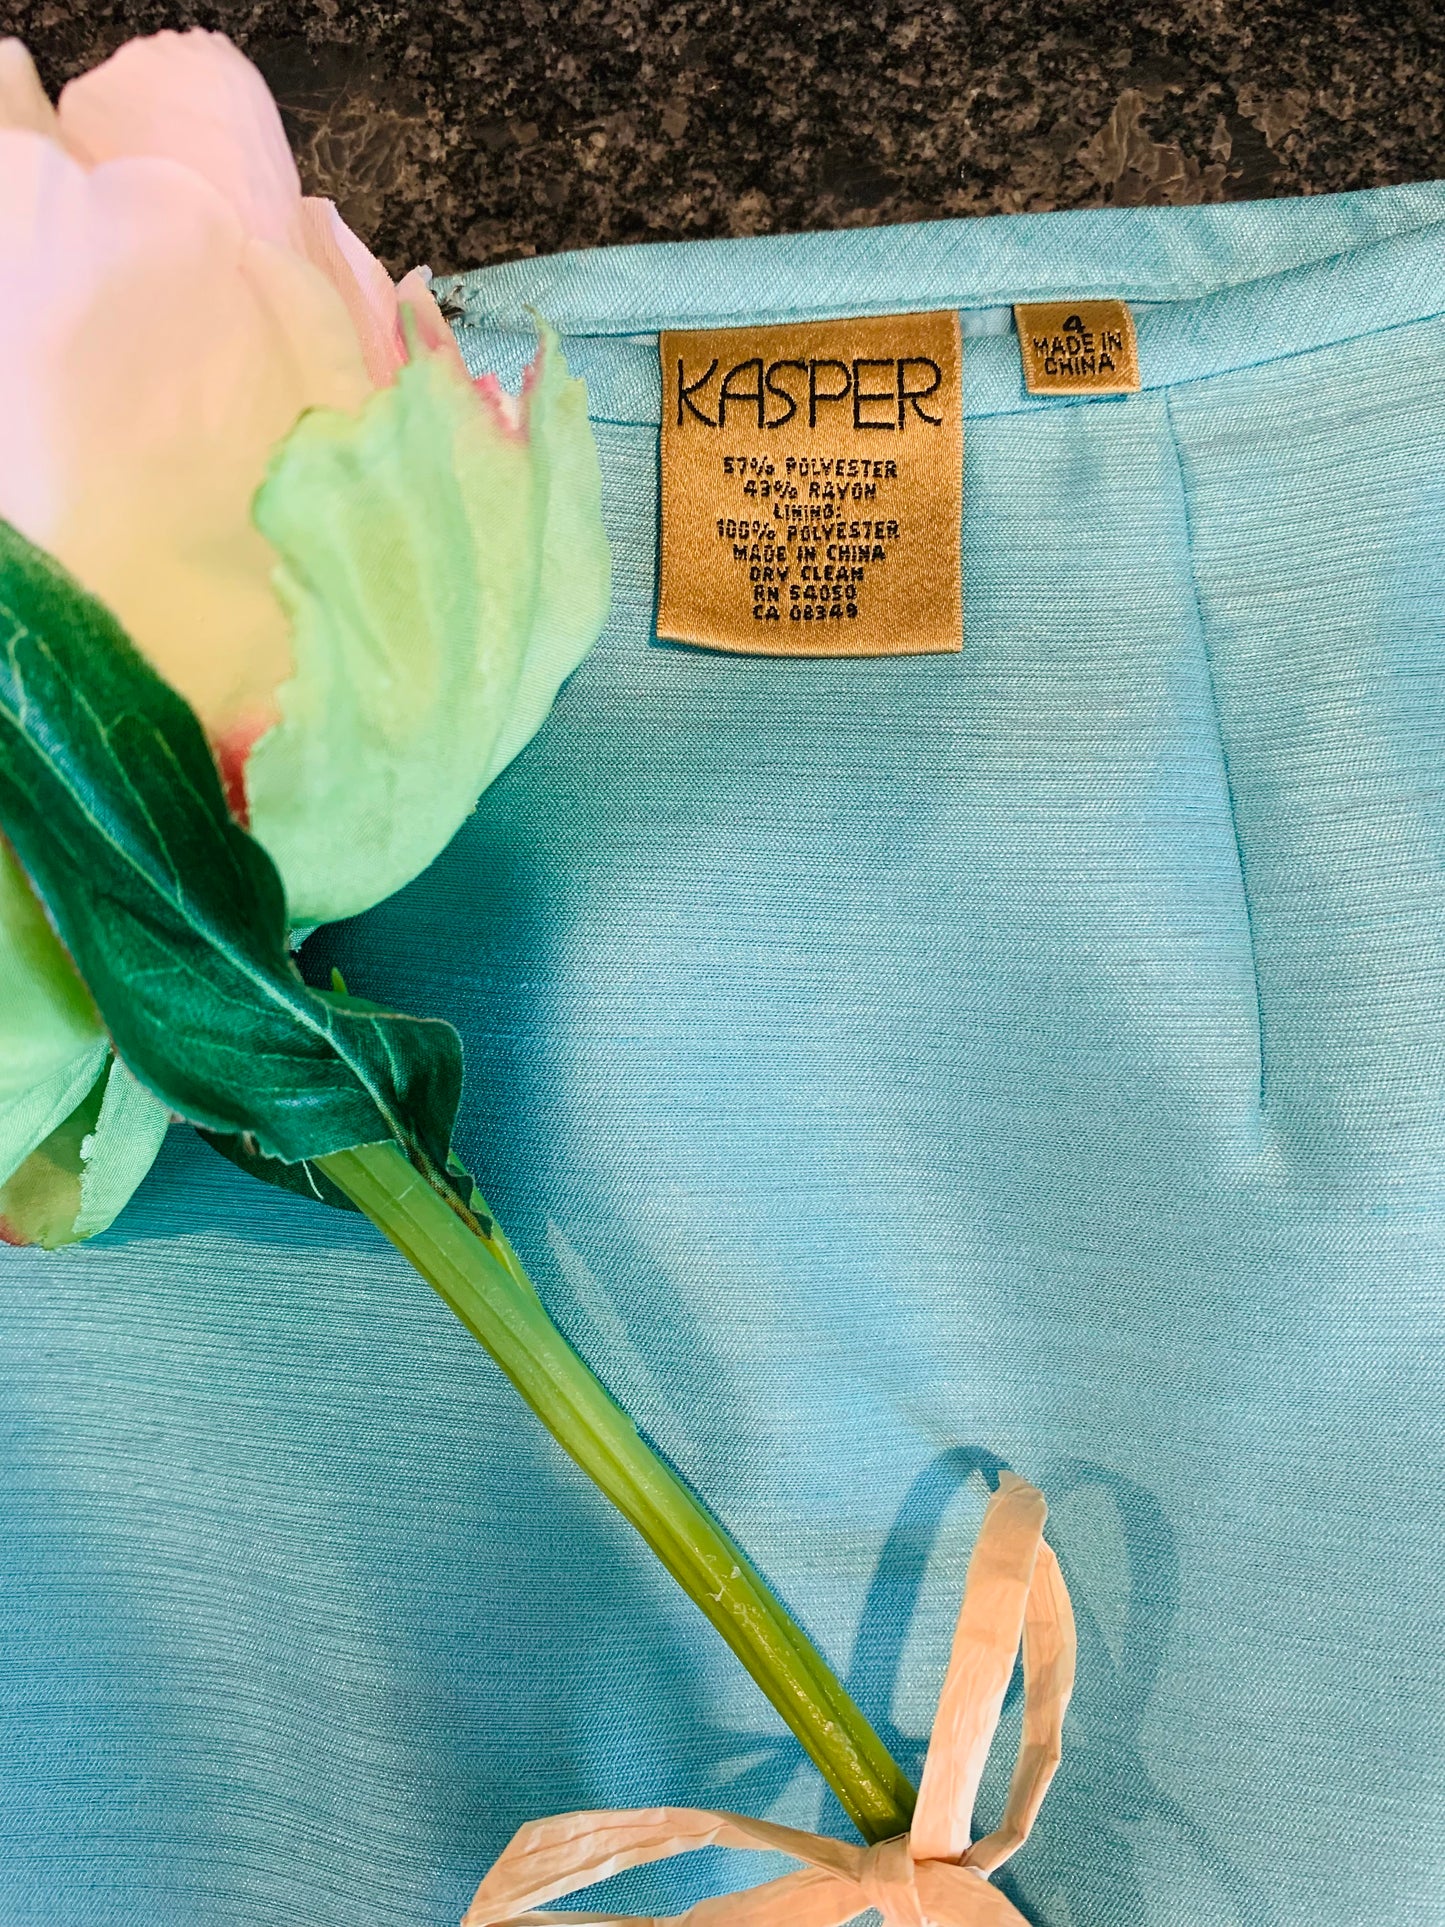 Kasper Sea Foam Blue Two-Piece Skirt Suit